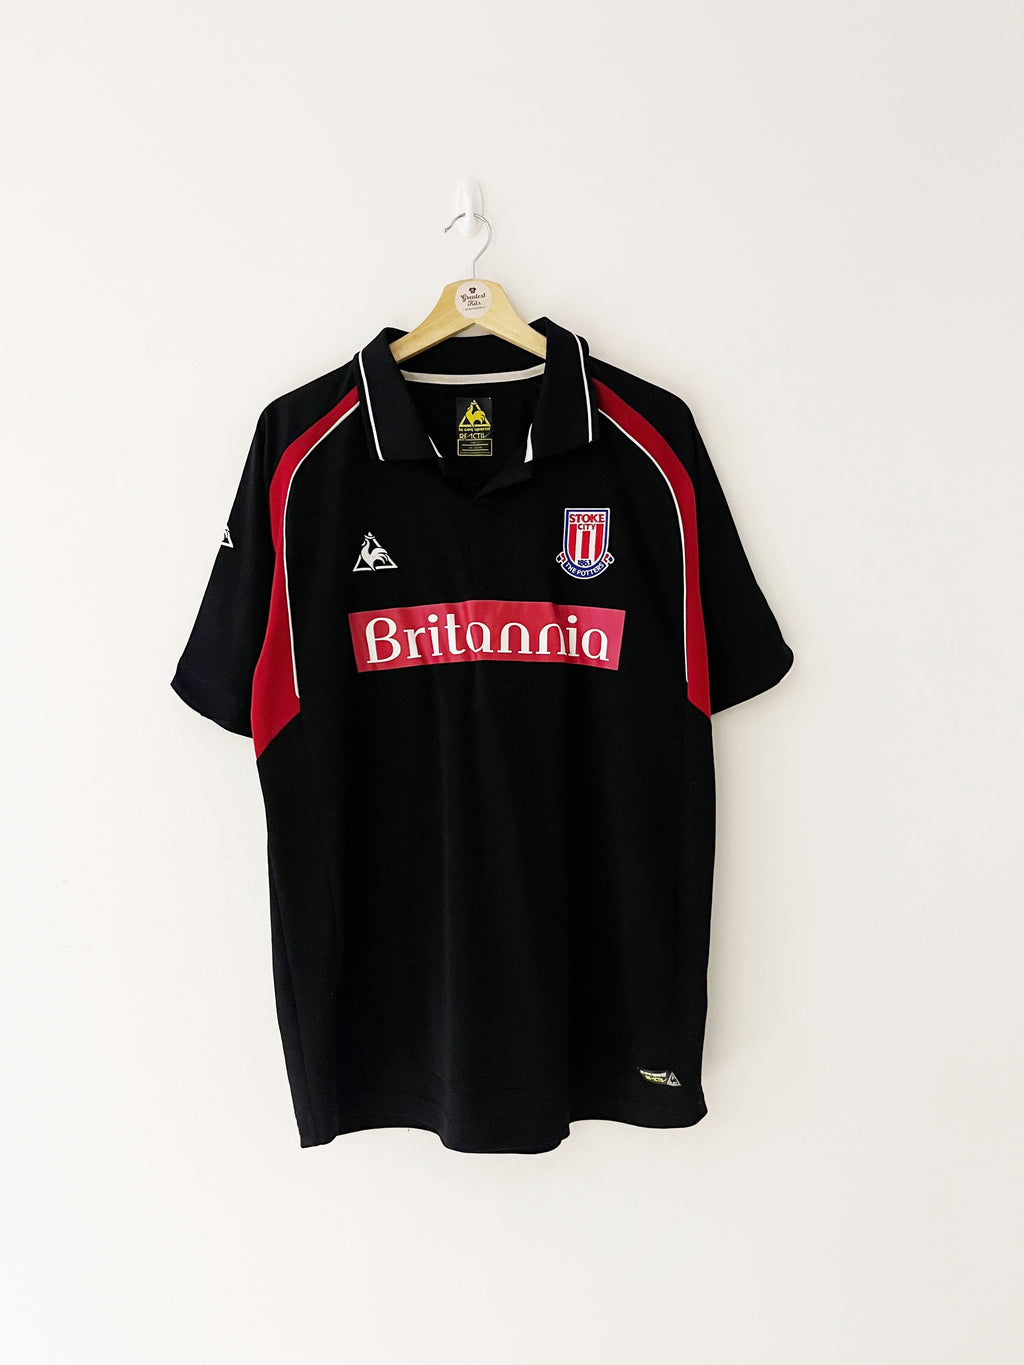 2009/10 Stoke City Away Shirt (L) 9/10